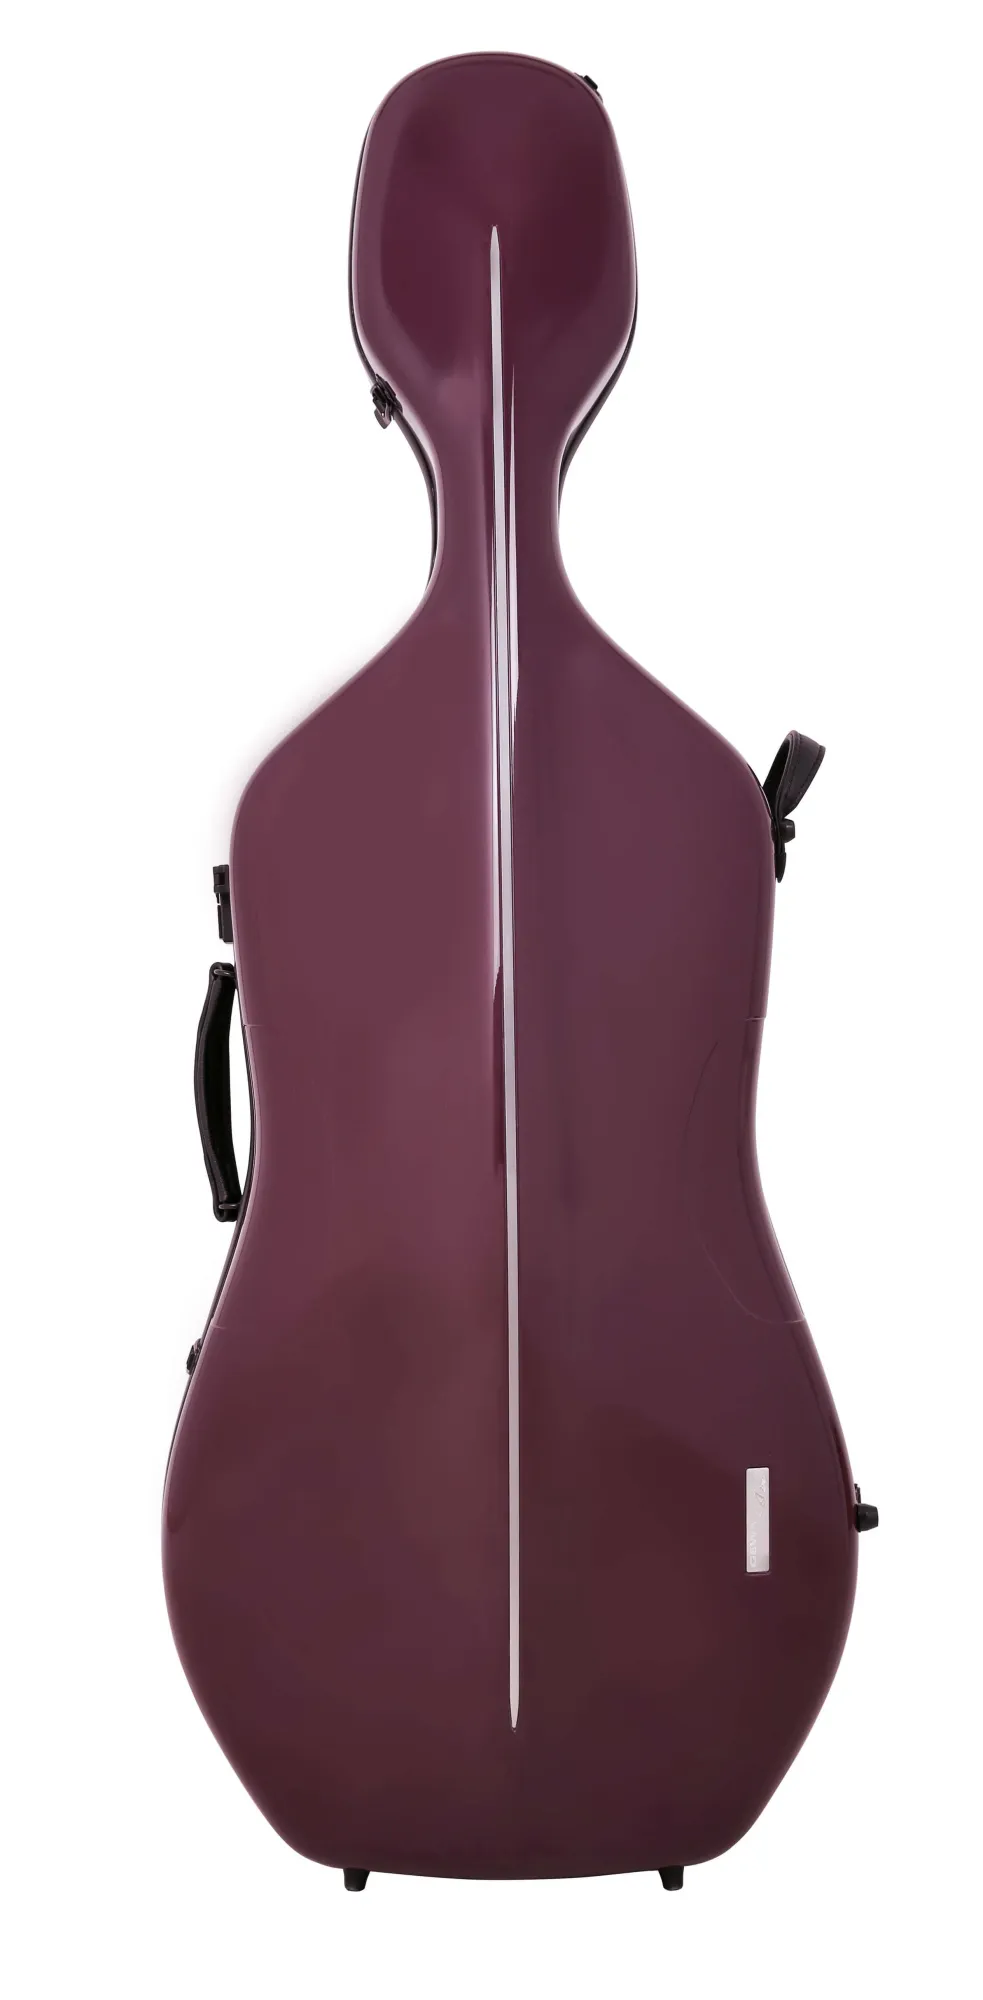 GEWA AIR Cello (Violoncello) Etui (Koffer) außen violett, innen schwarz